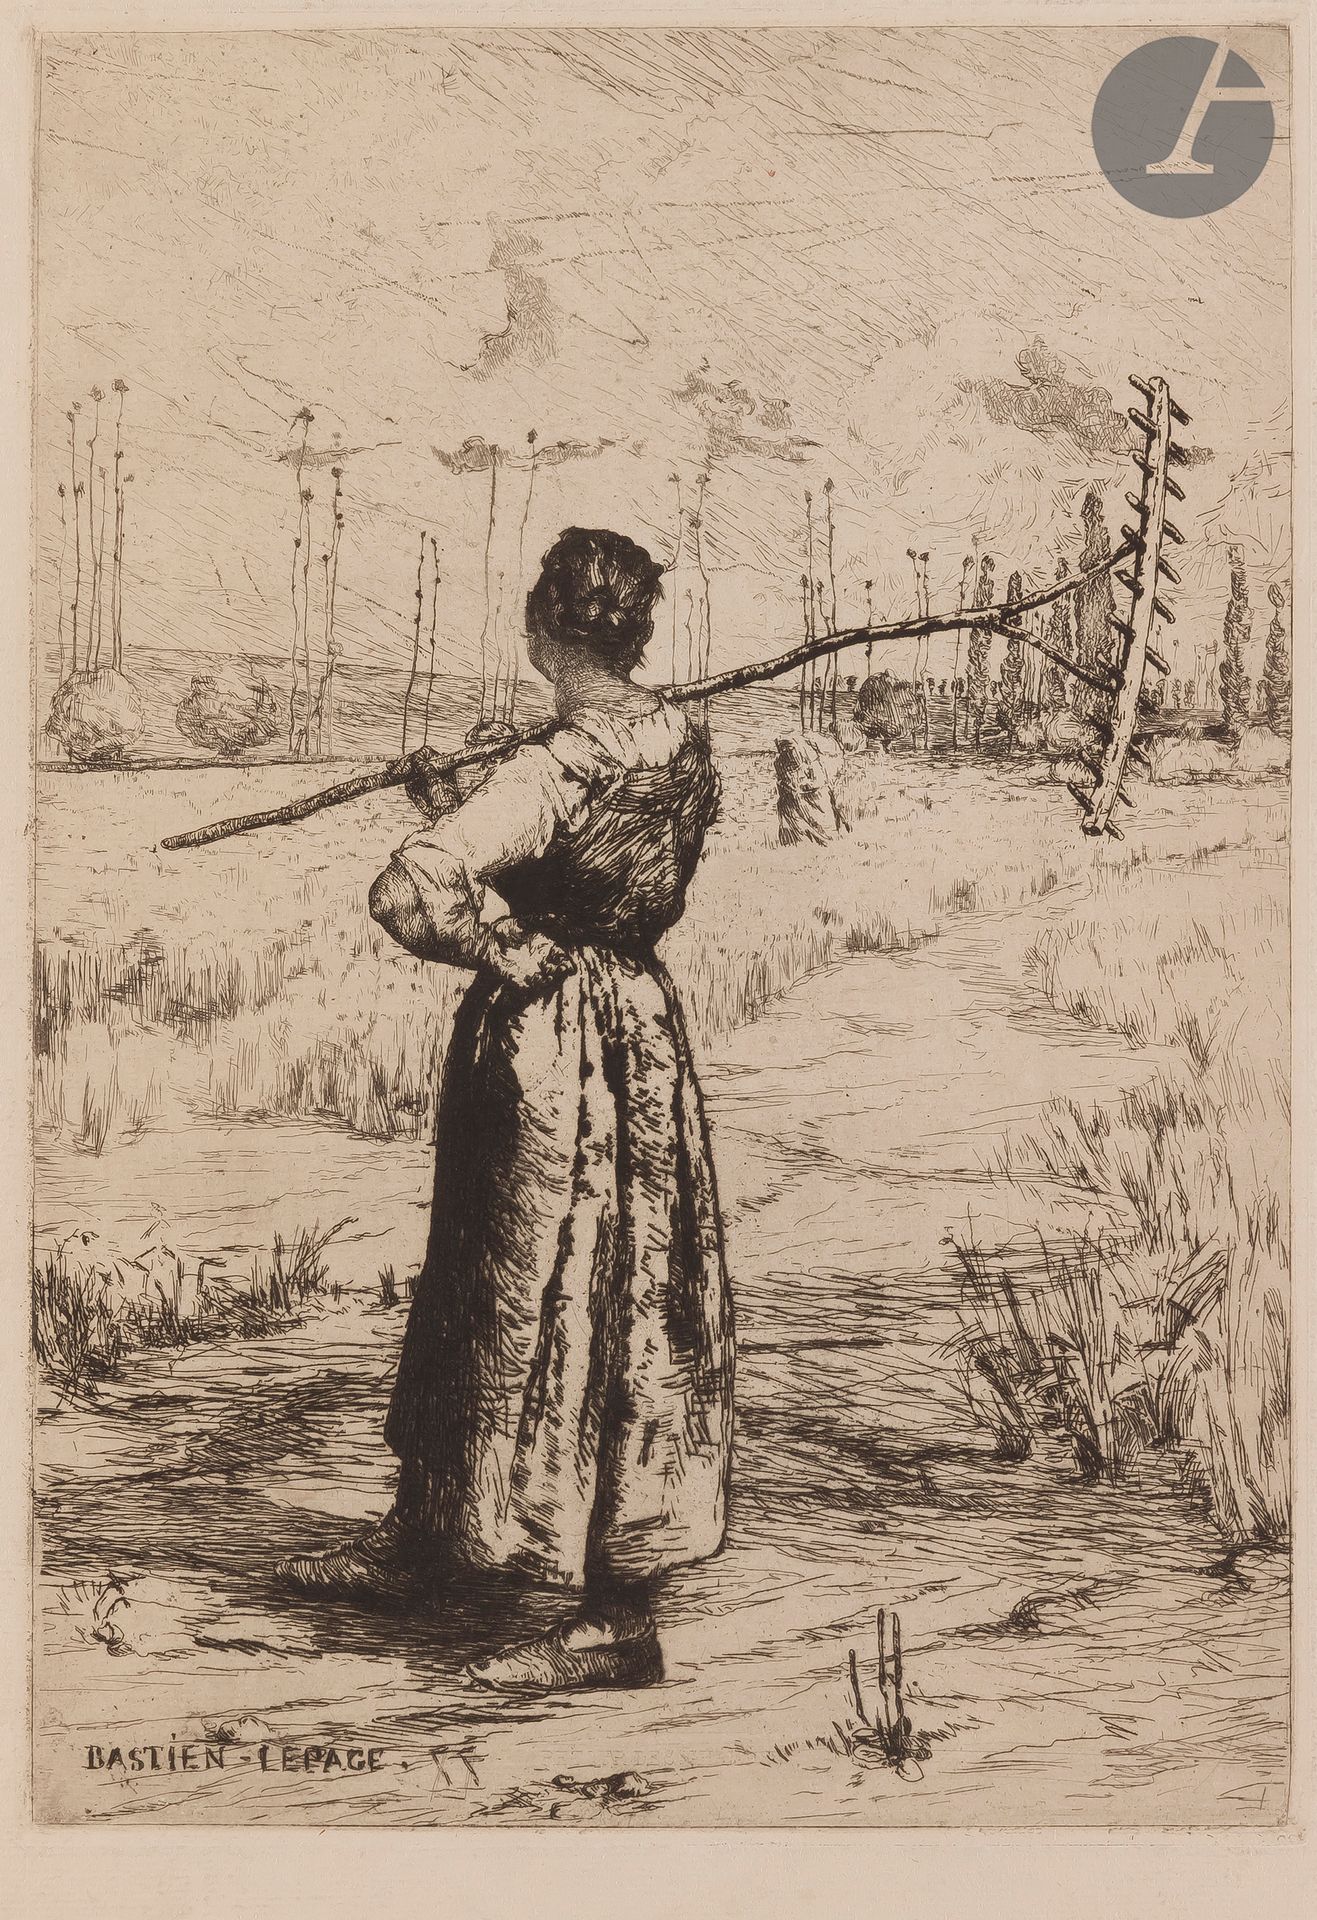 Null 朱尔斯-巴斯蒂安-莱佩奇 (1848-1884)

从田间回来。1877.蚀刻版画。195 x 275毫米。Beraldi 1; I.F.F. 1-1&hellip;